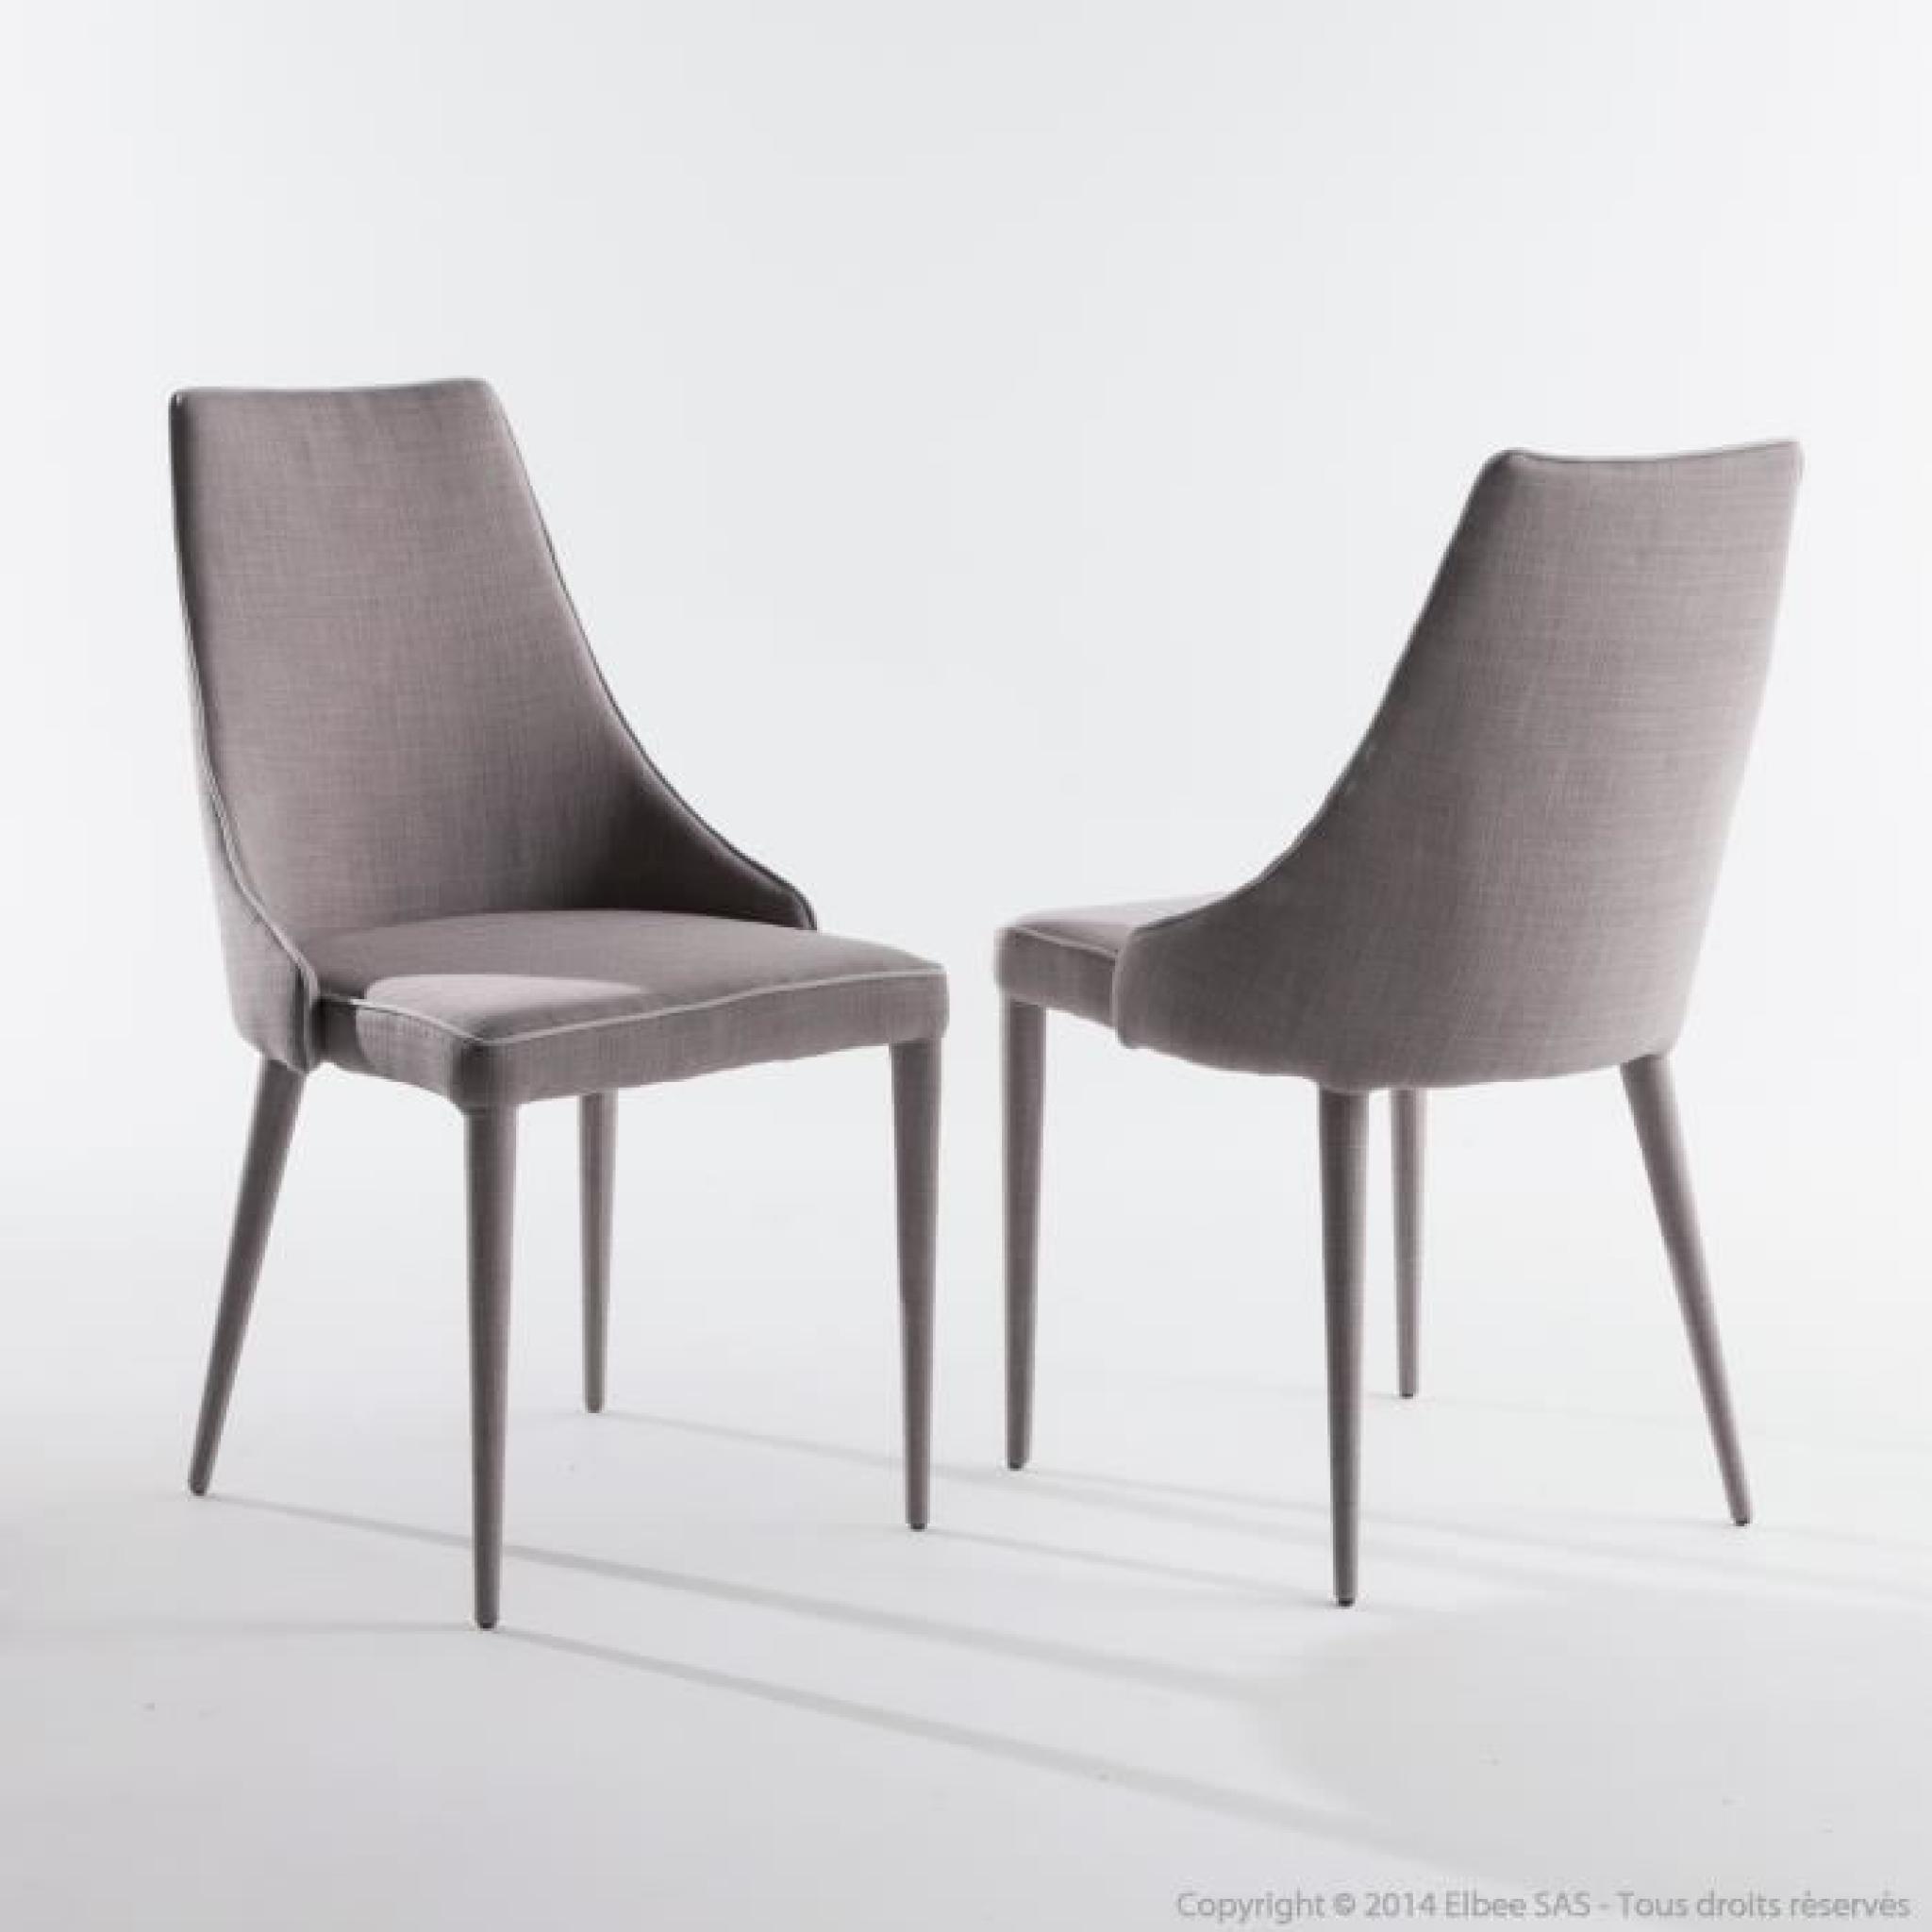 Chaise en tissu gris clair - Lot de 2 KATJA